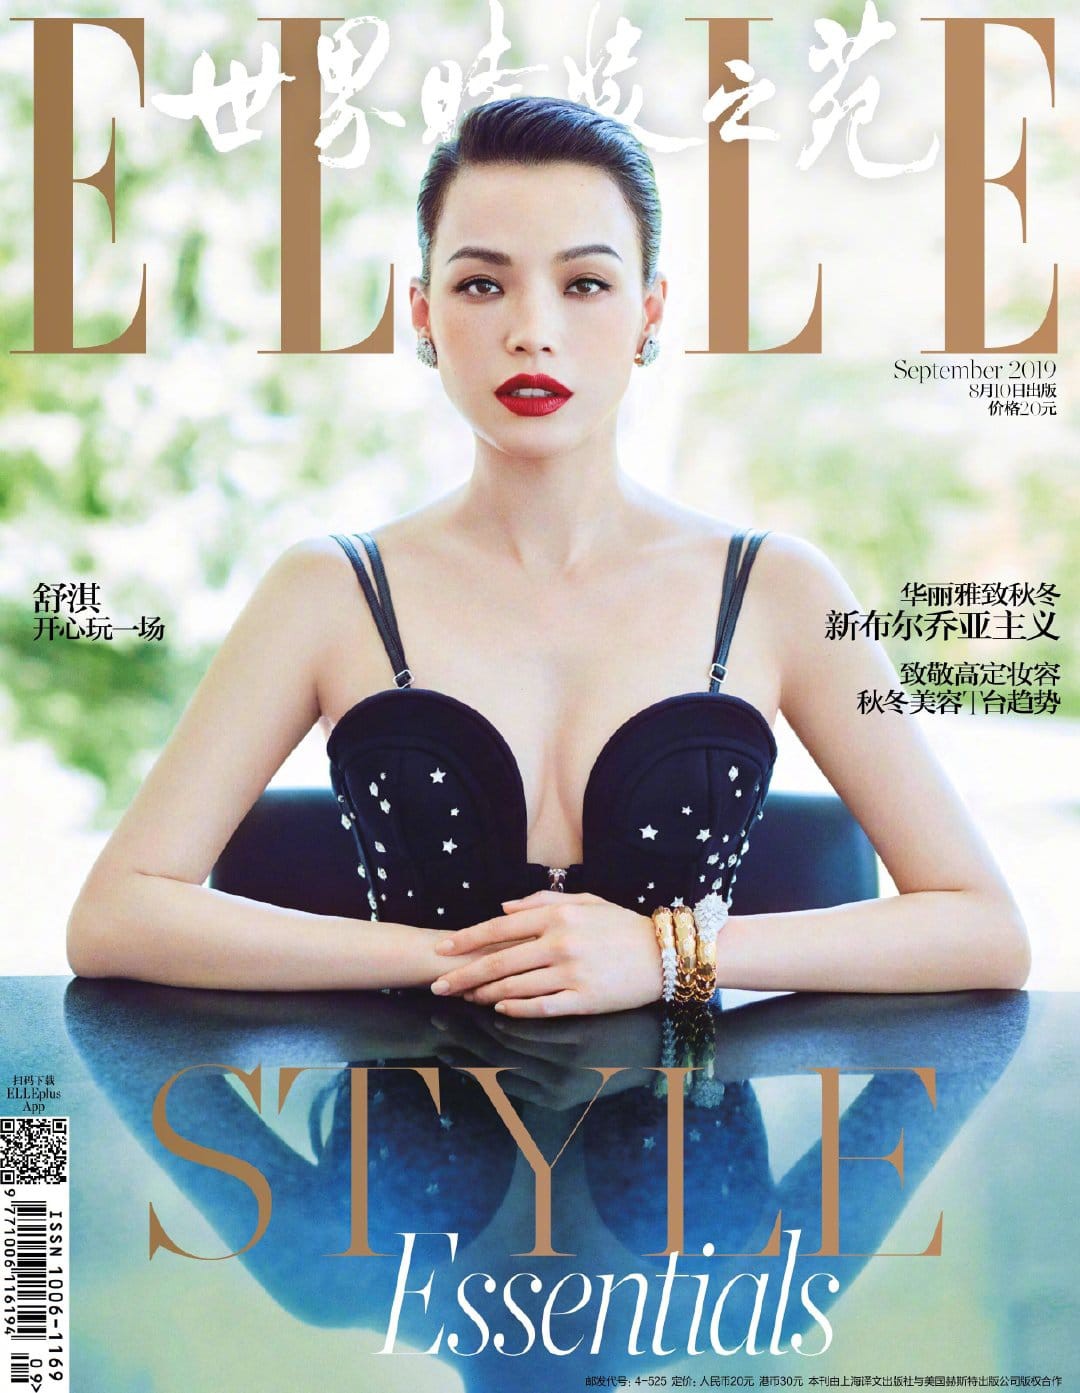 Có thể bạn chưa biết - Xếp hạng địa vị, tầm ảnh hưởng của các tạp chí thời trang nam-nữ tại Trung Quốc